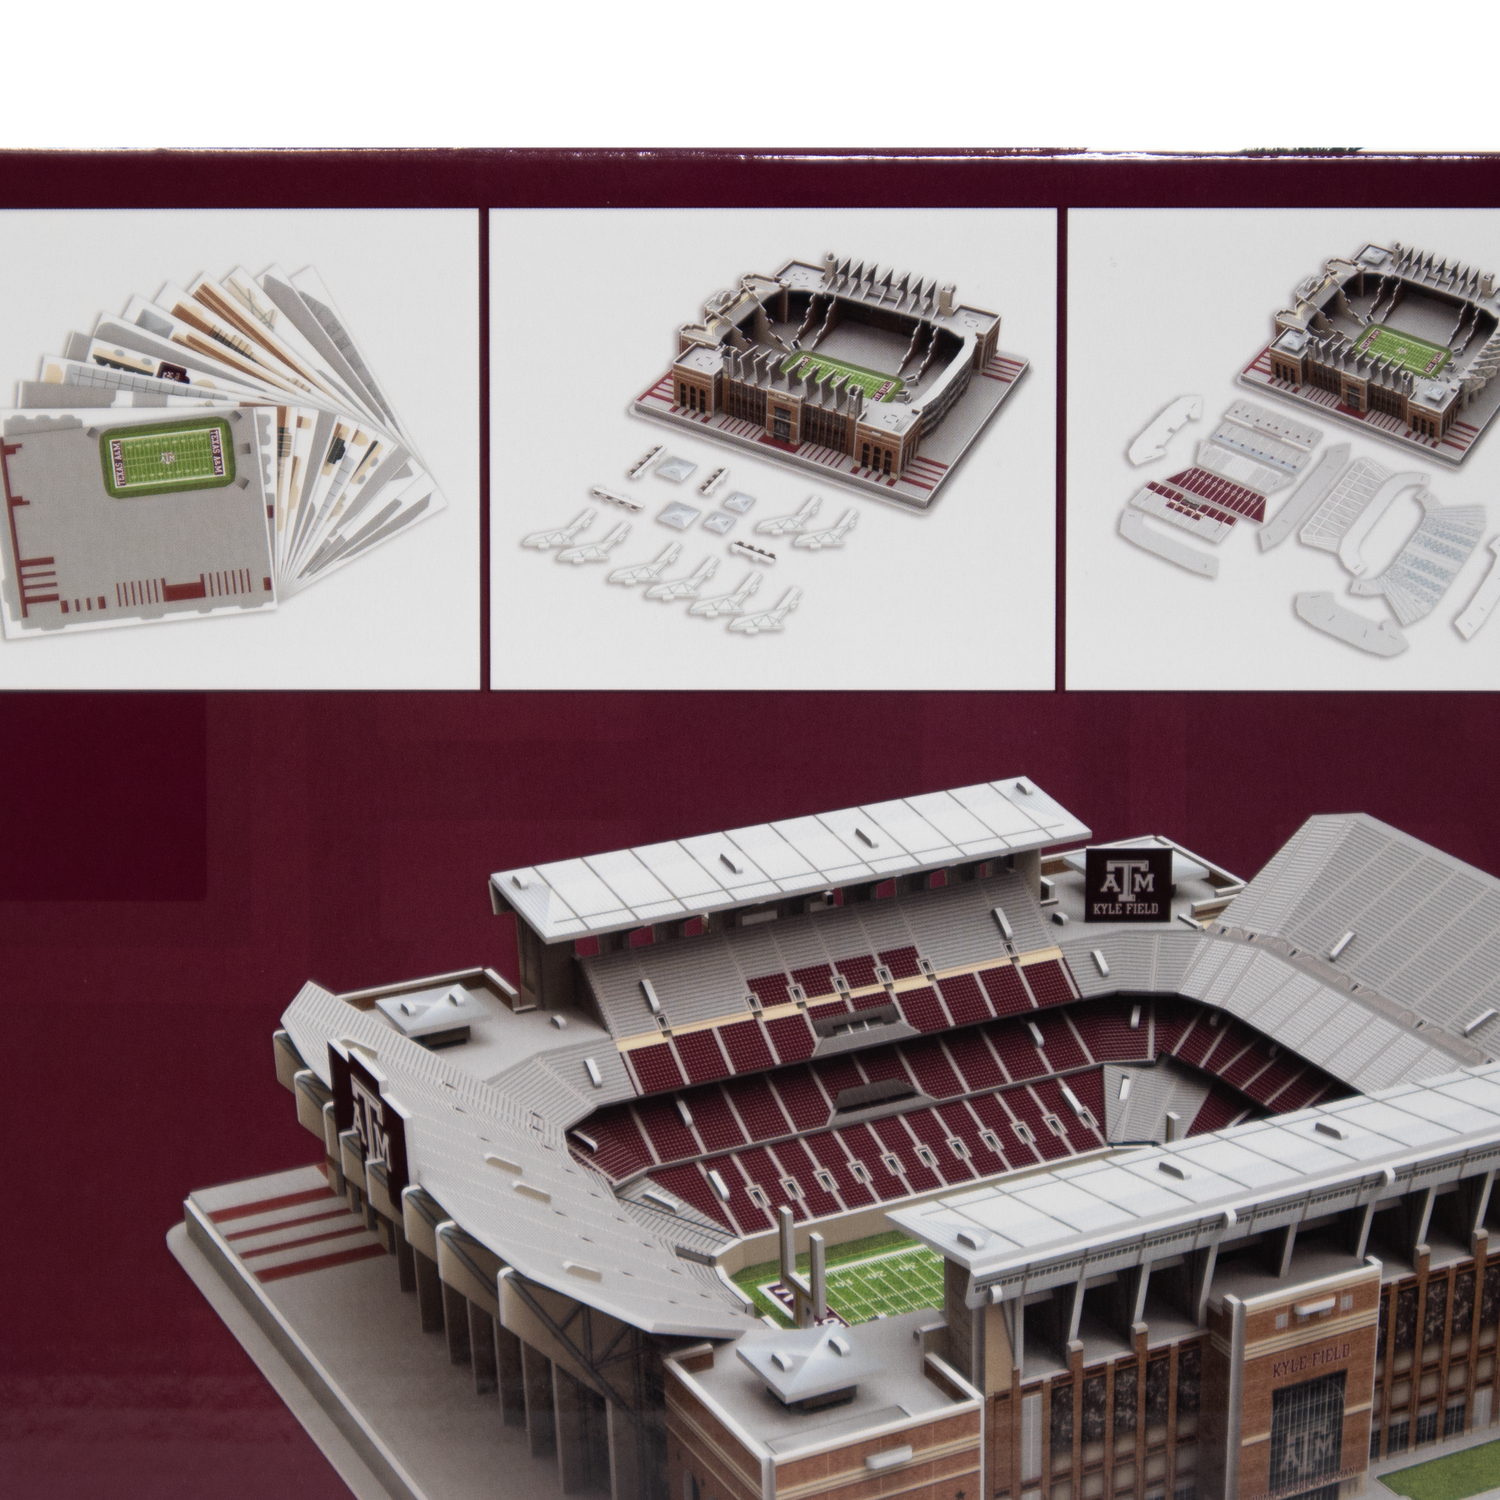 Stadium Football Stadium Model  3d Football Stadiums Puzzle